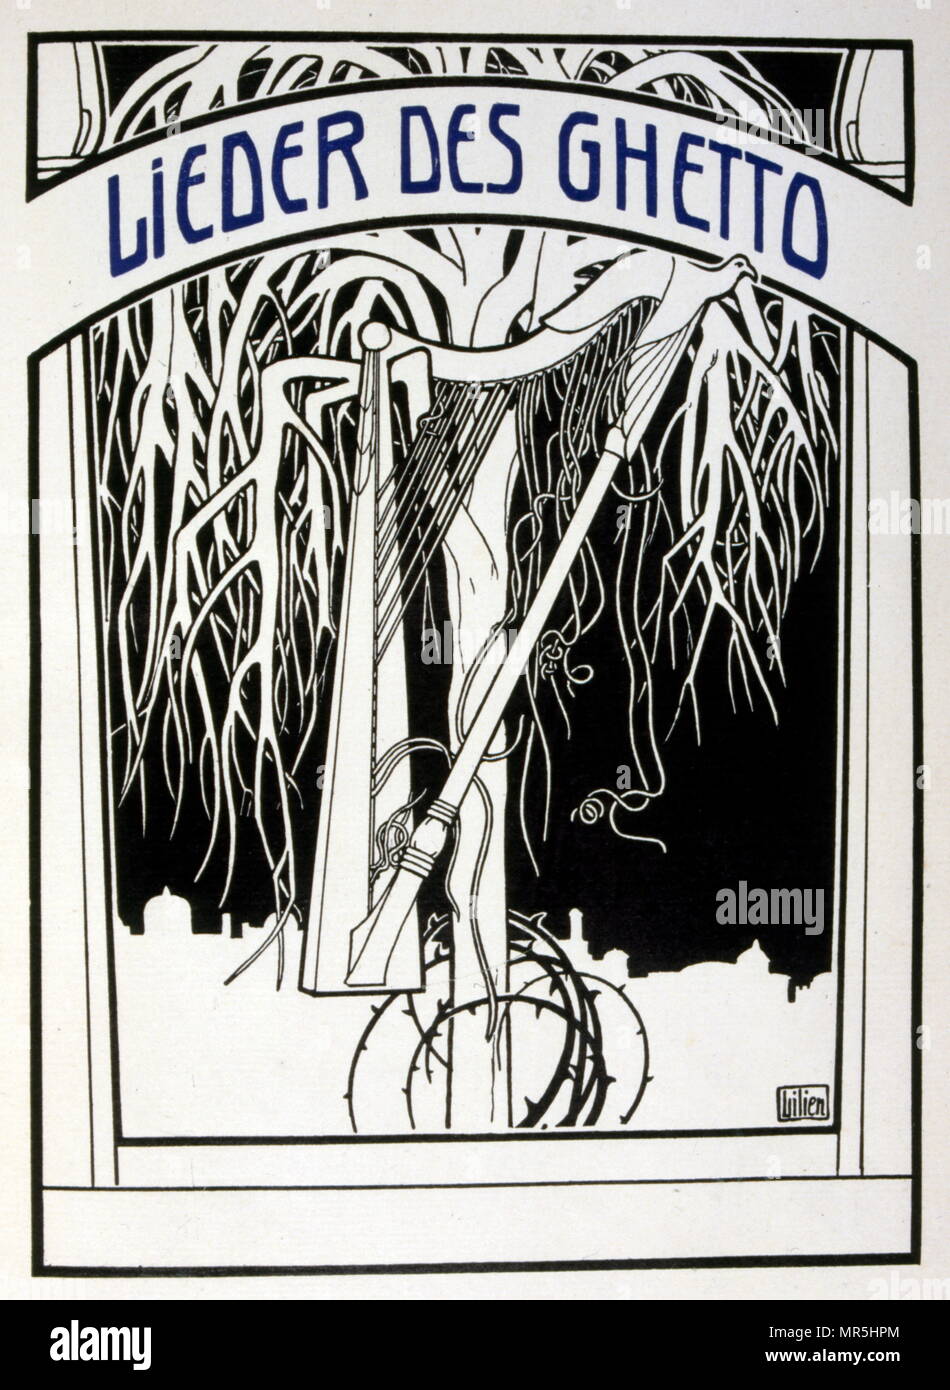 Ilustración de Ephraim á Moisés Lilien 'Lieder des Ghetto" (canciones del ghetto) de 1902, por Morris Rosenfeld (Moshé Jacob alteran) (1862 - 1923); poeta Yiddish. Efraín Moisés Lilien (1874-1925), ilustrador y grabador de estilo art nouveau, que destaca por su arte sobre temas judíos. Él es a veces llamado "el primer artista sionista. Foto de stock